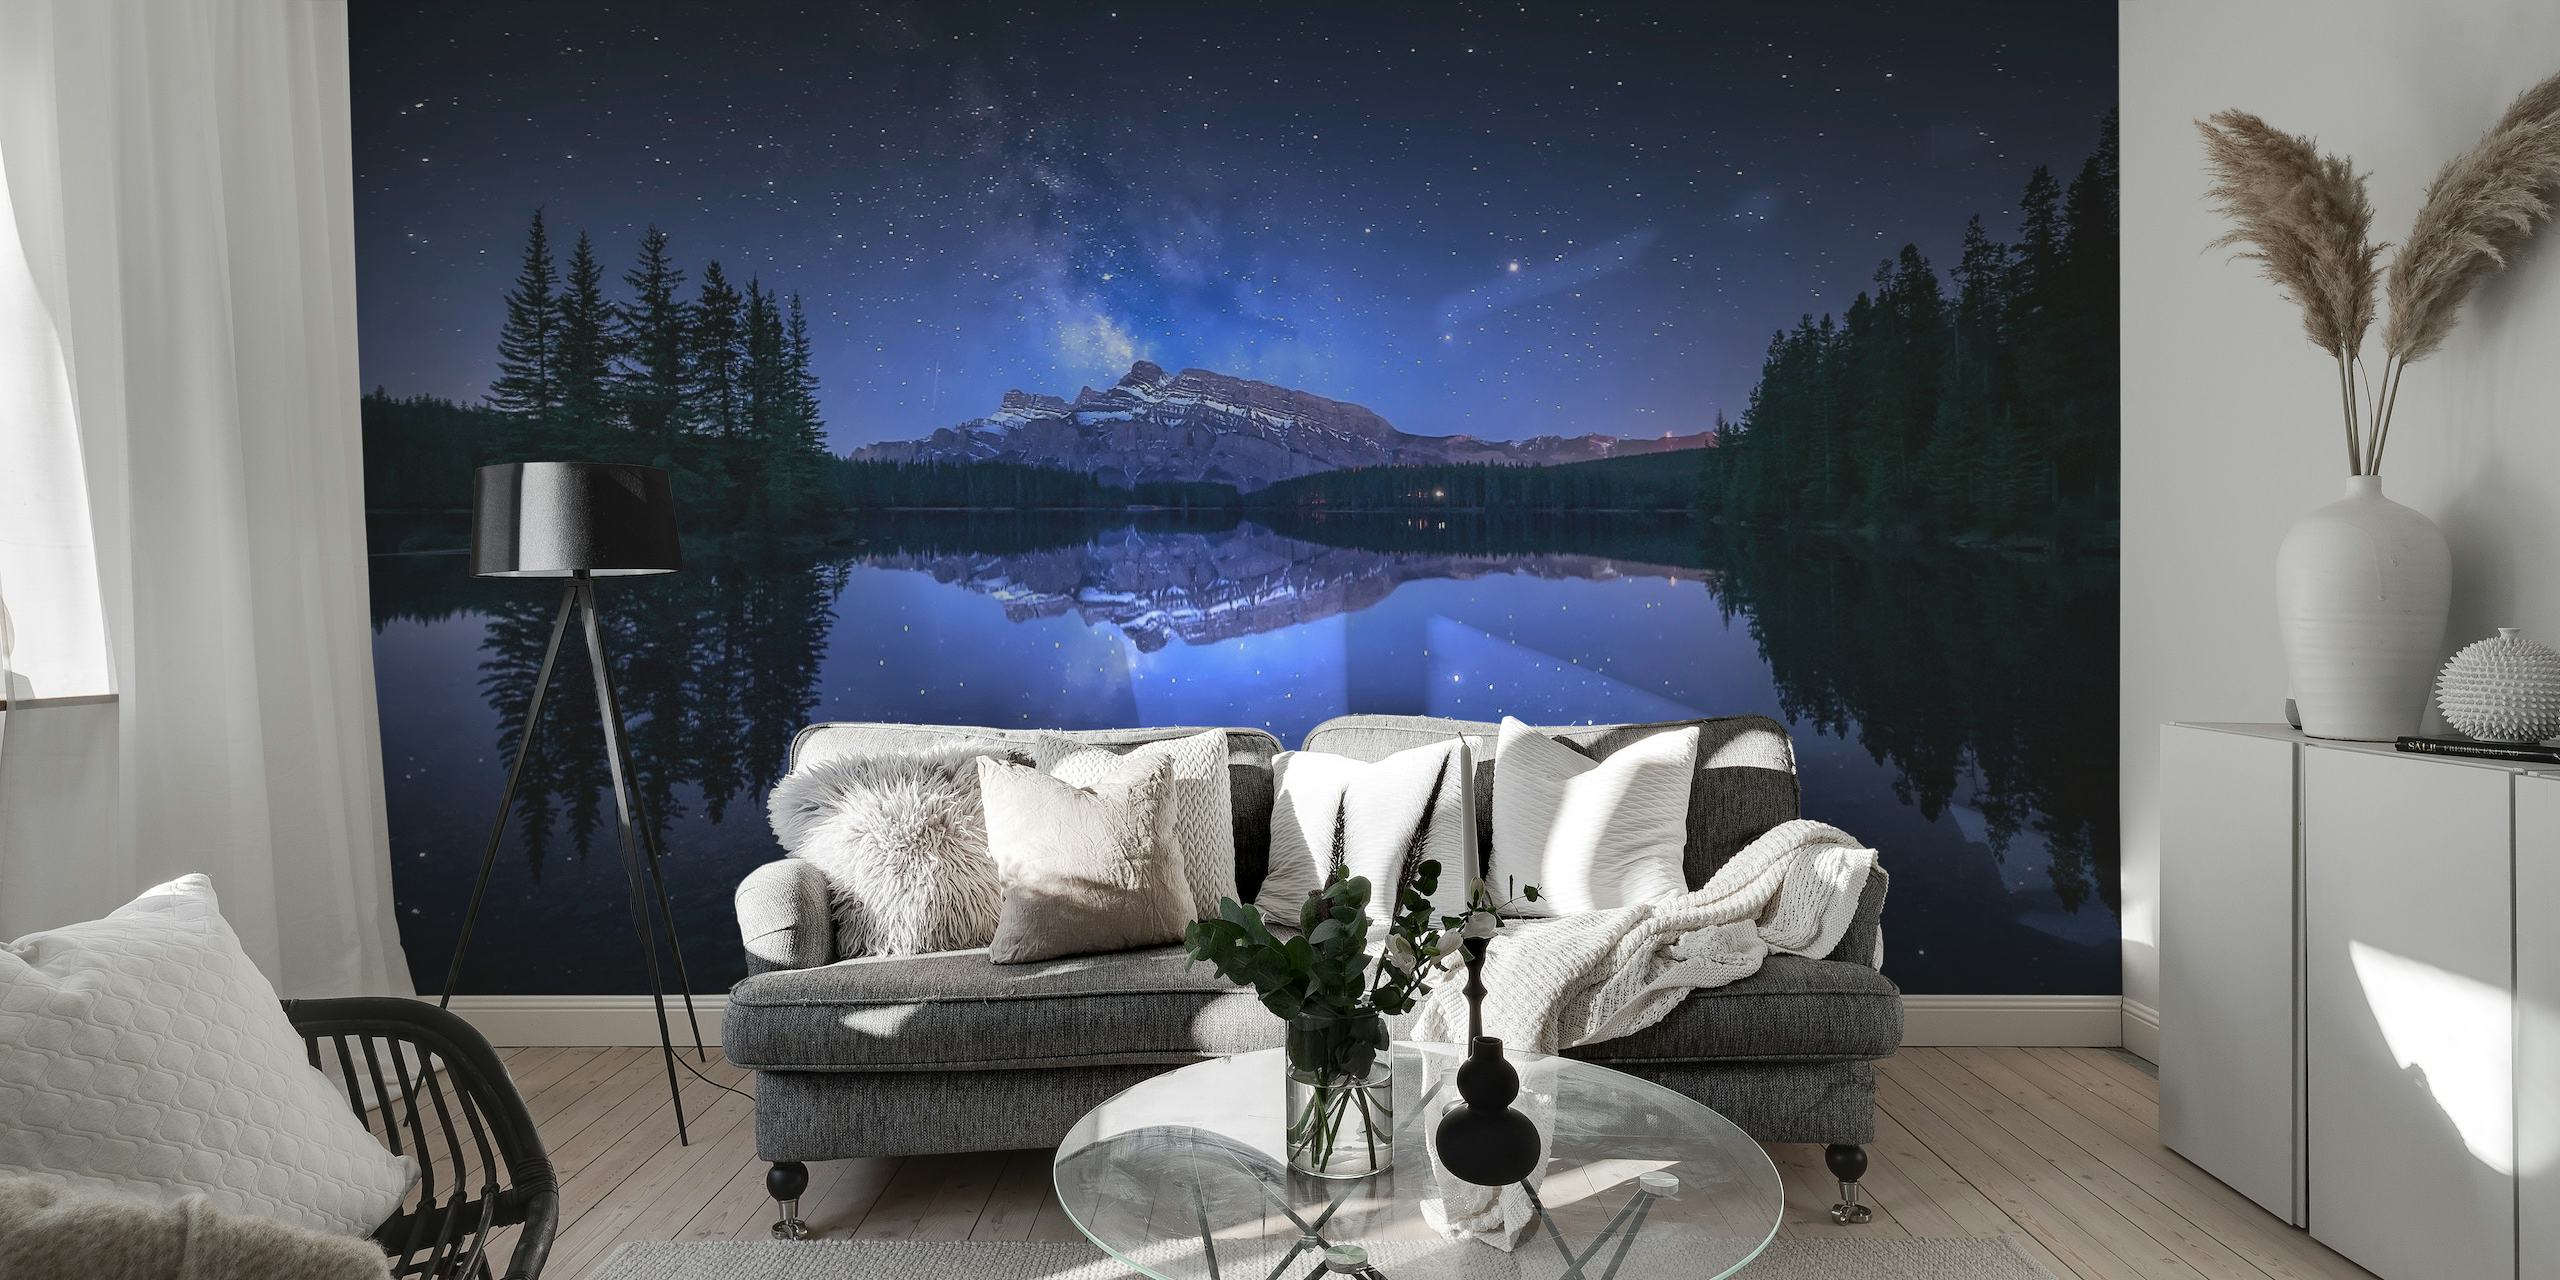 Stjerneklar natt over Two Jack Lake med skogsilhuett og fascinerende refleksjon i vannveggmaleriet